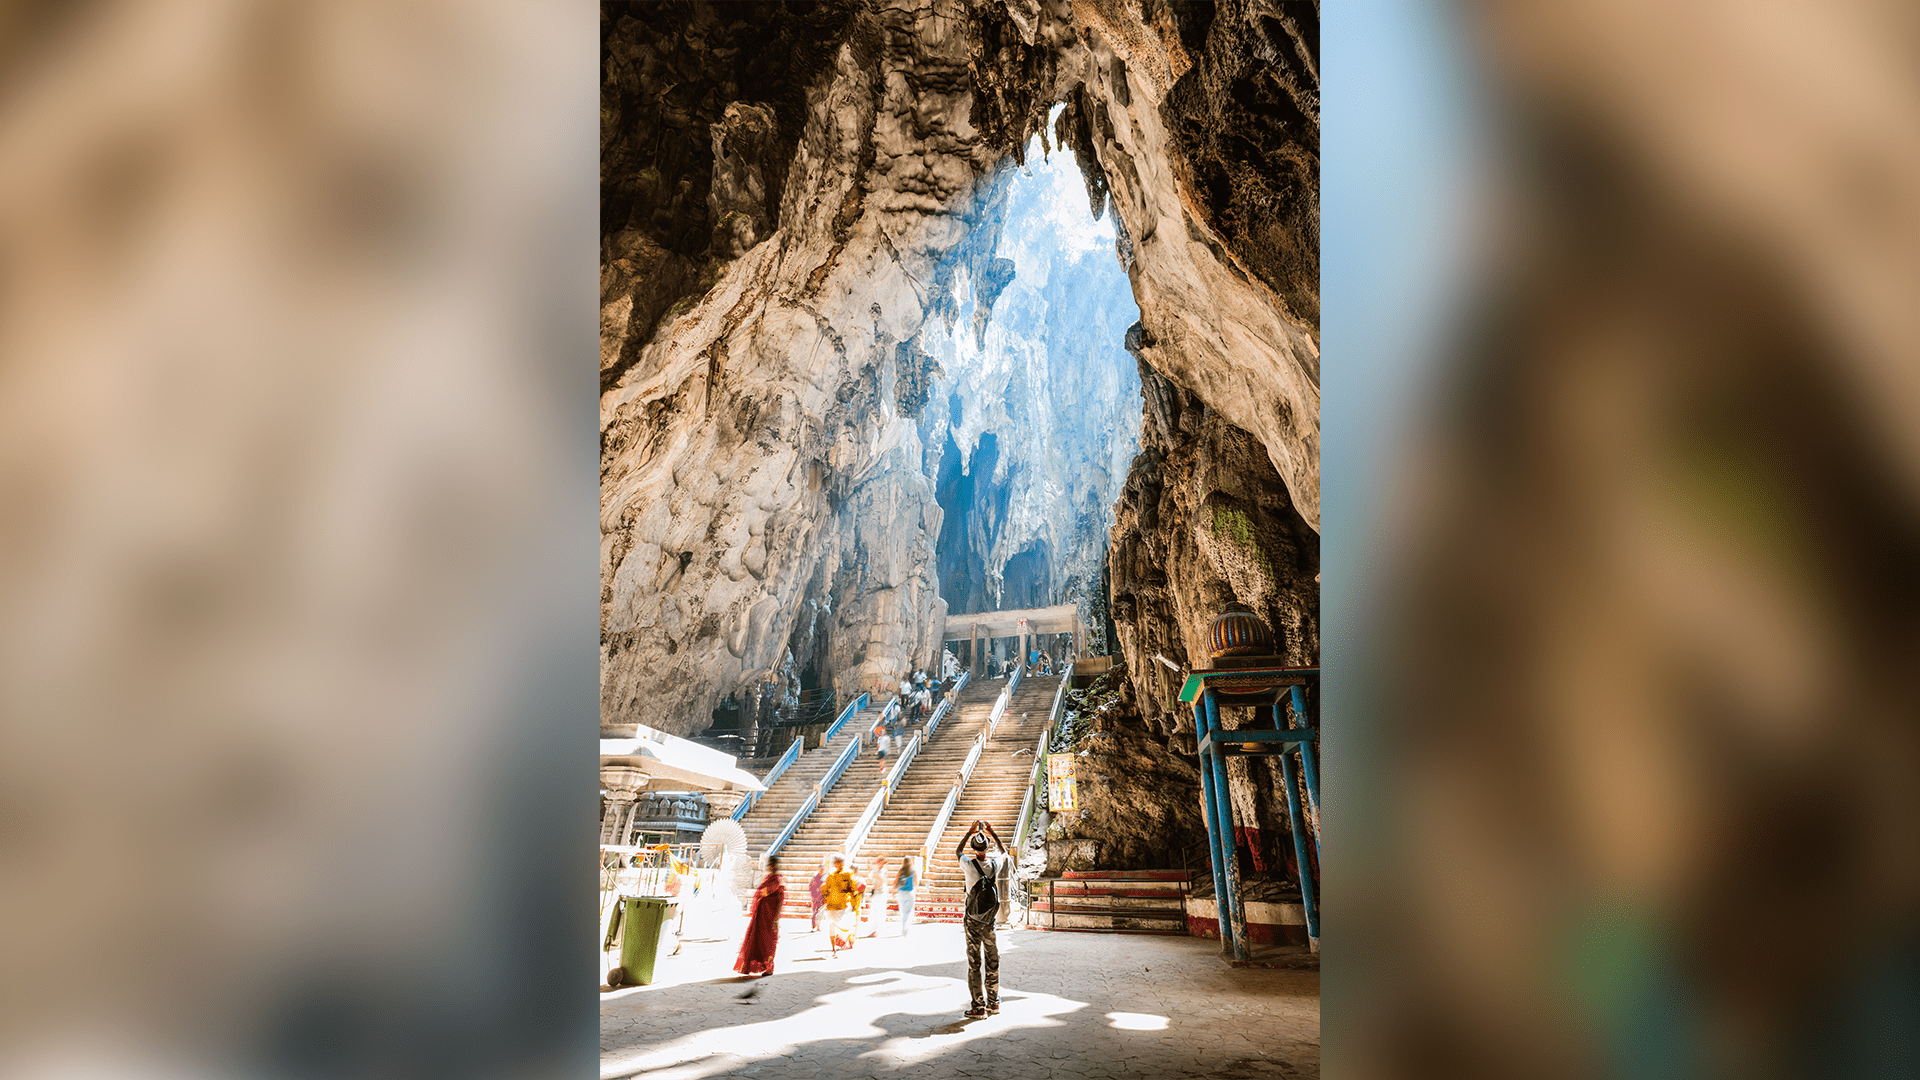 Jeskyně Batu jsou jednou z nejoblíbenějších turistických atrakcí Malajsie.